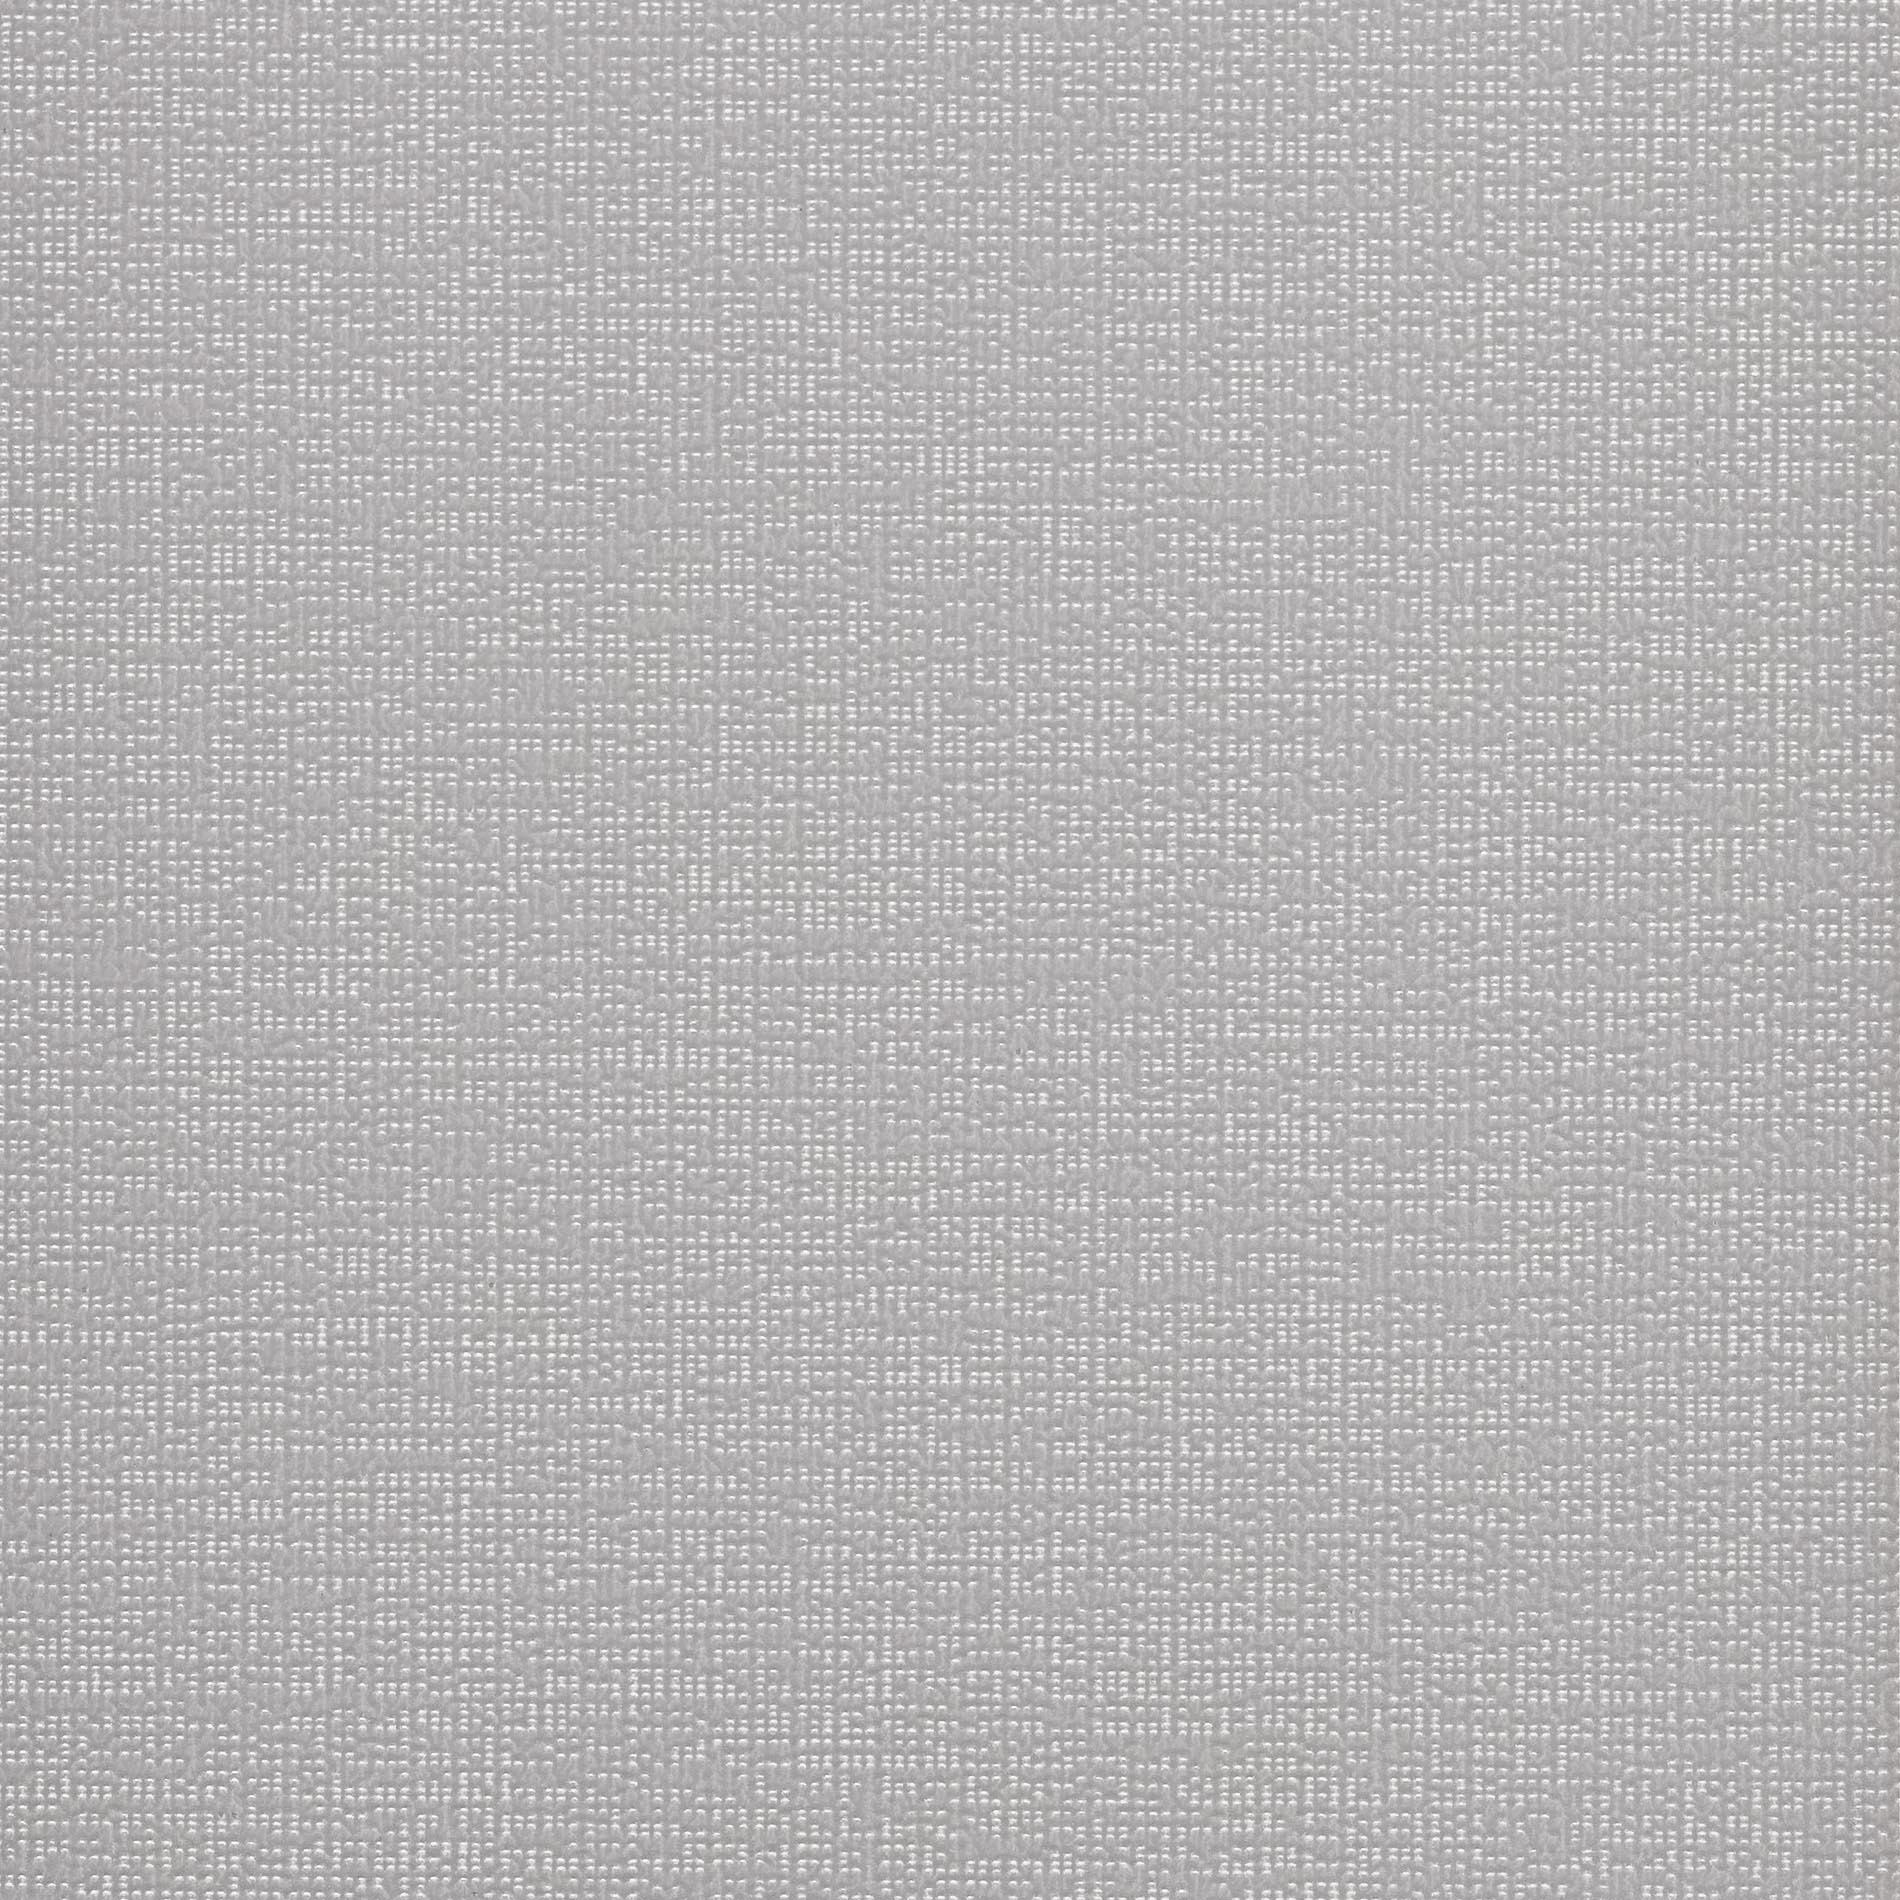 Altex - Fabric - SOLTIS PERFORM 92 - Alu/White - 92-2051